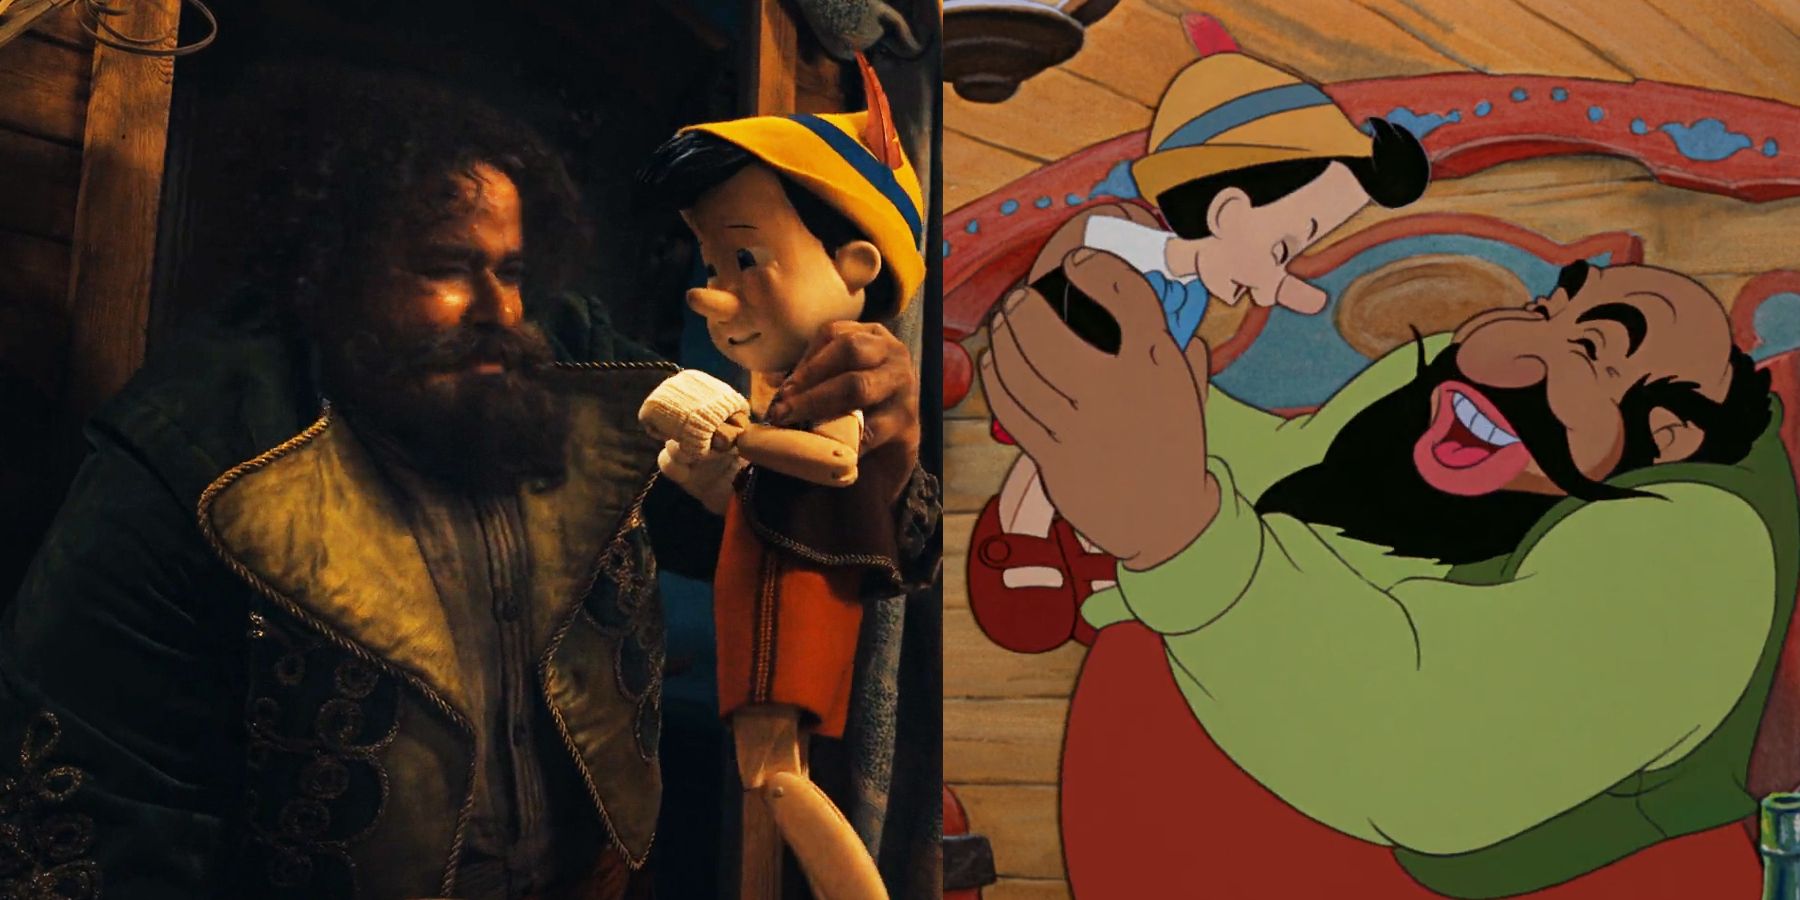 Stromboli in the 2022 Pinocchio remake